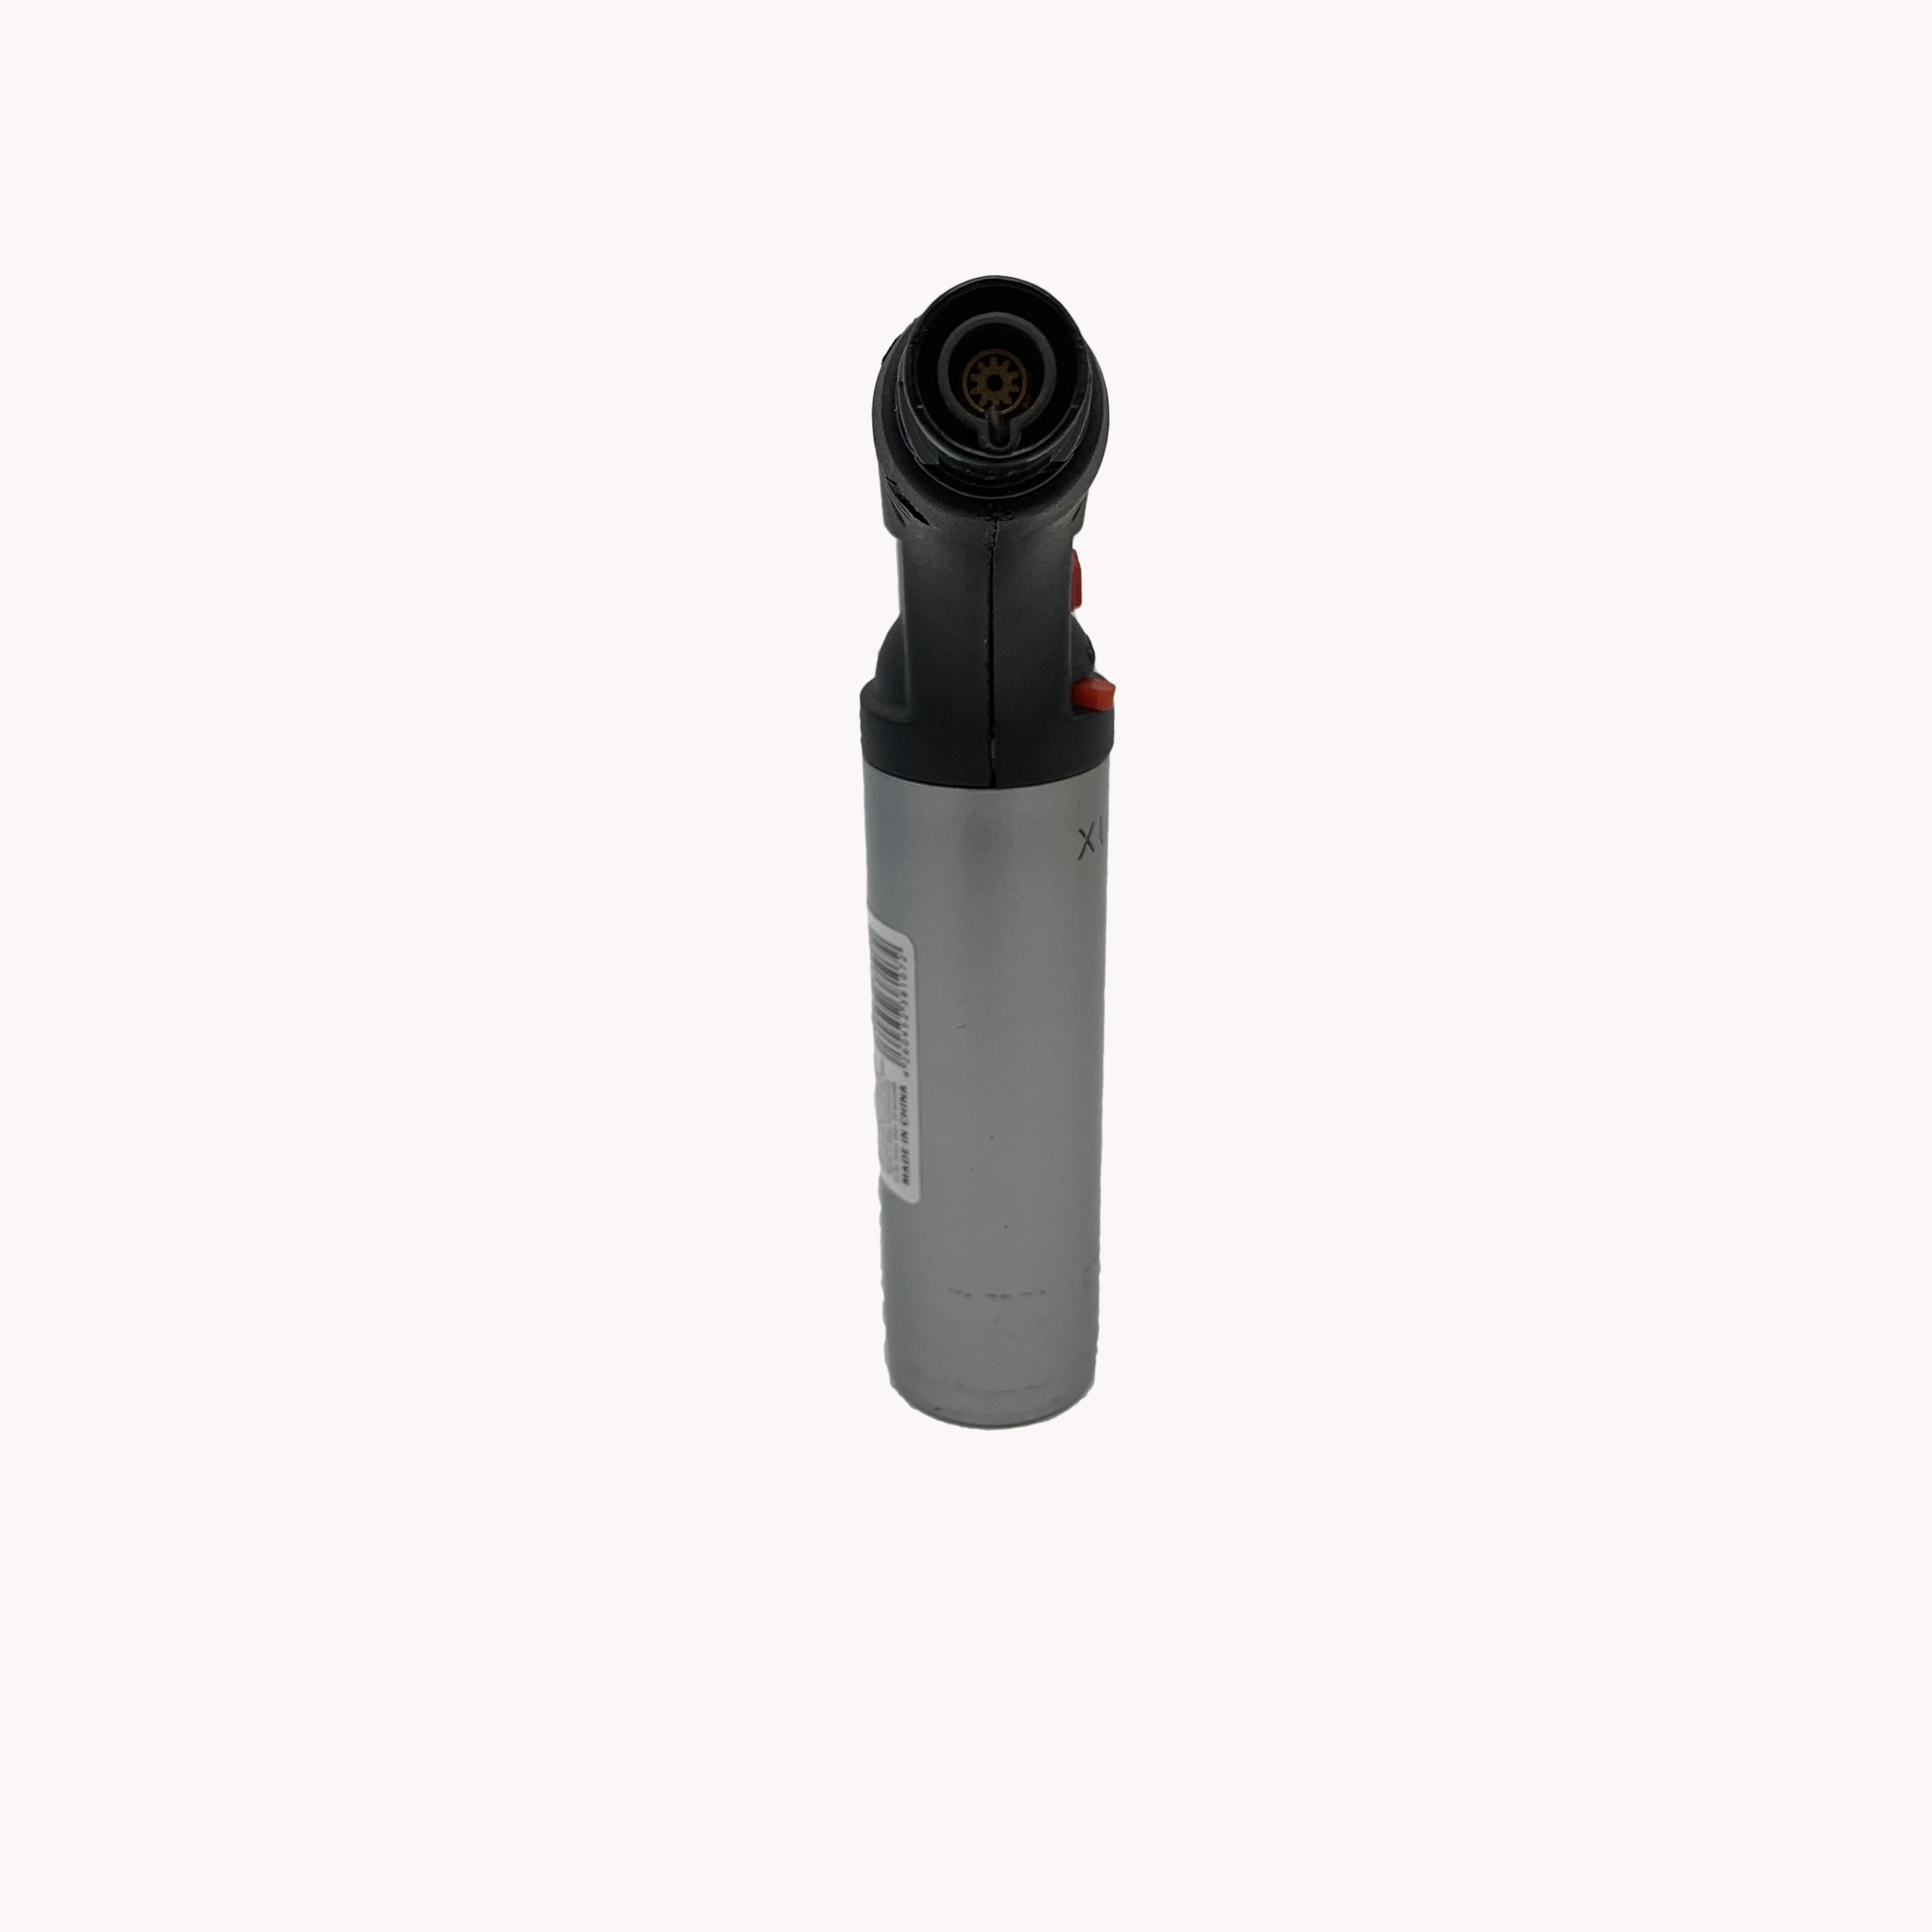 Pequeños y portátiles de alta calidad Fenix cigarros de Tabaco Windproof Torch-Lighter Antorcha Jet encendedor de gas butano